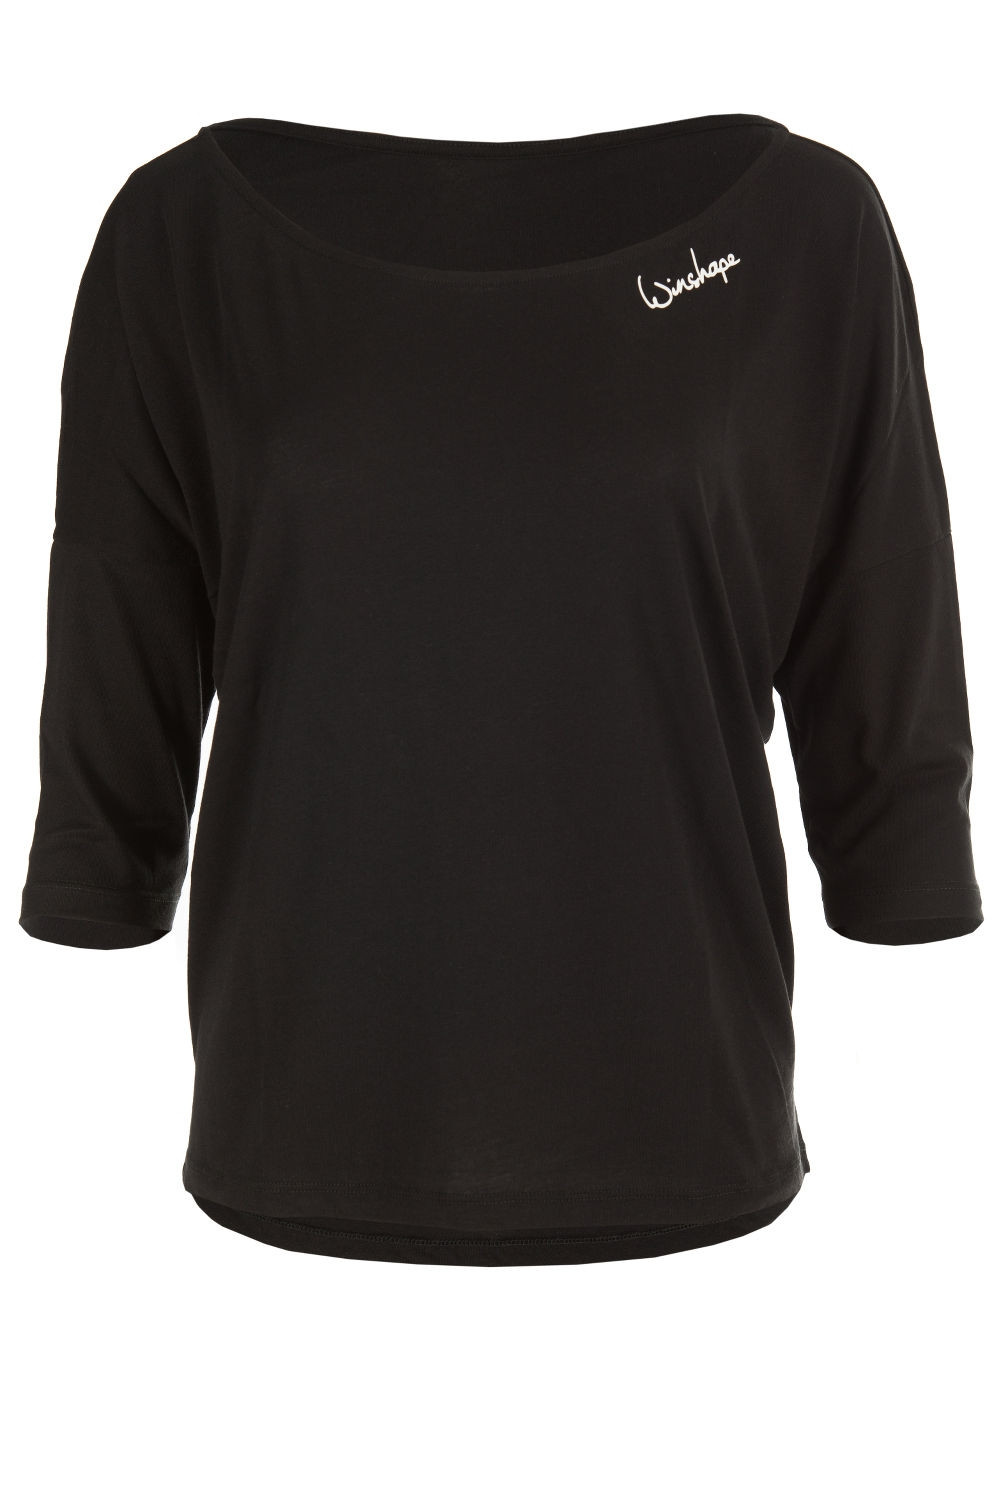 Ultra leichtes Modal-3/4-Arm Shirt MCS001, schwarz, Winshape Style Dance